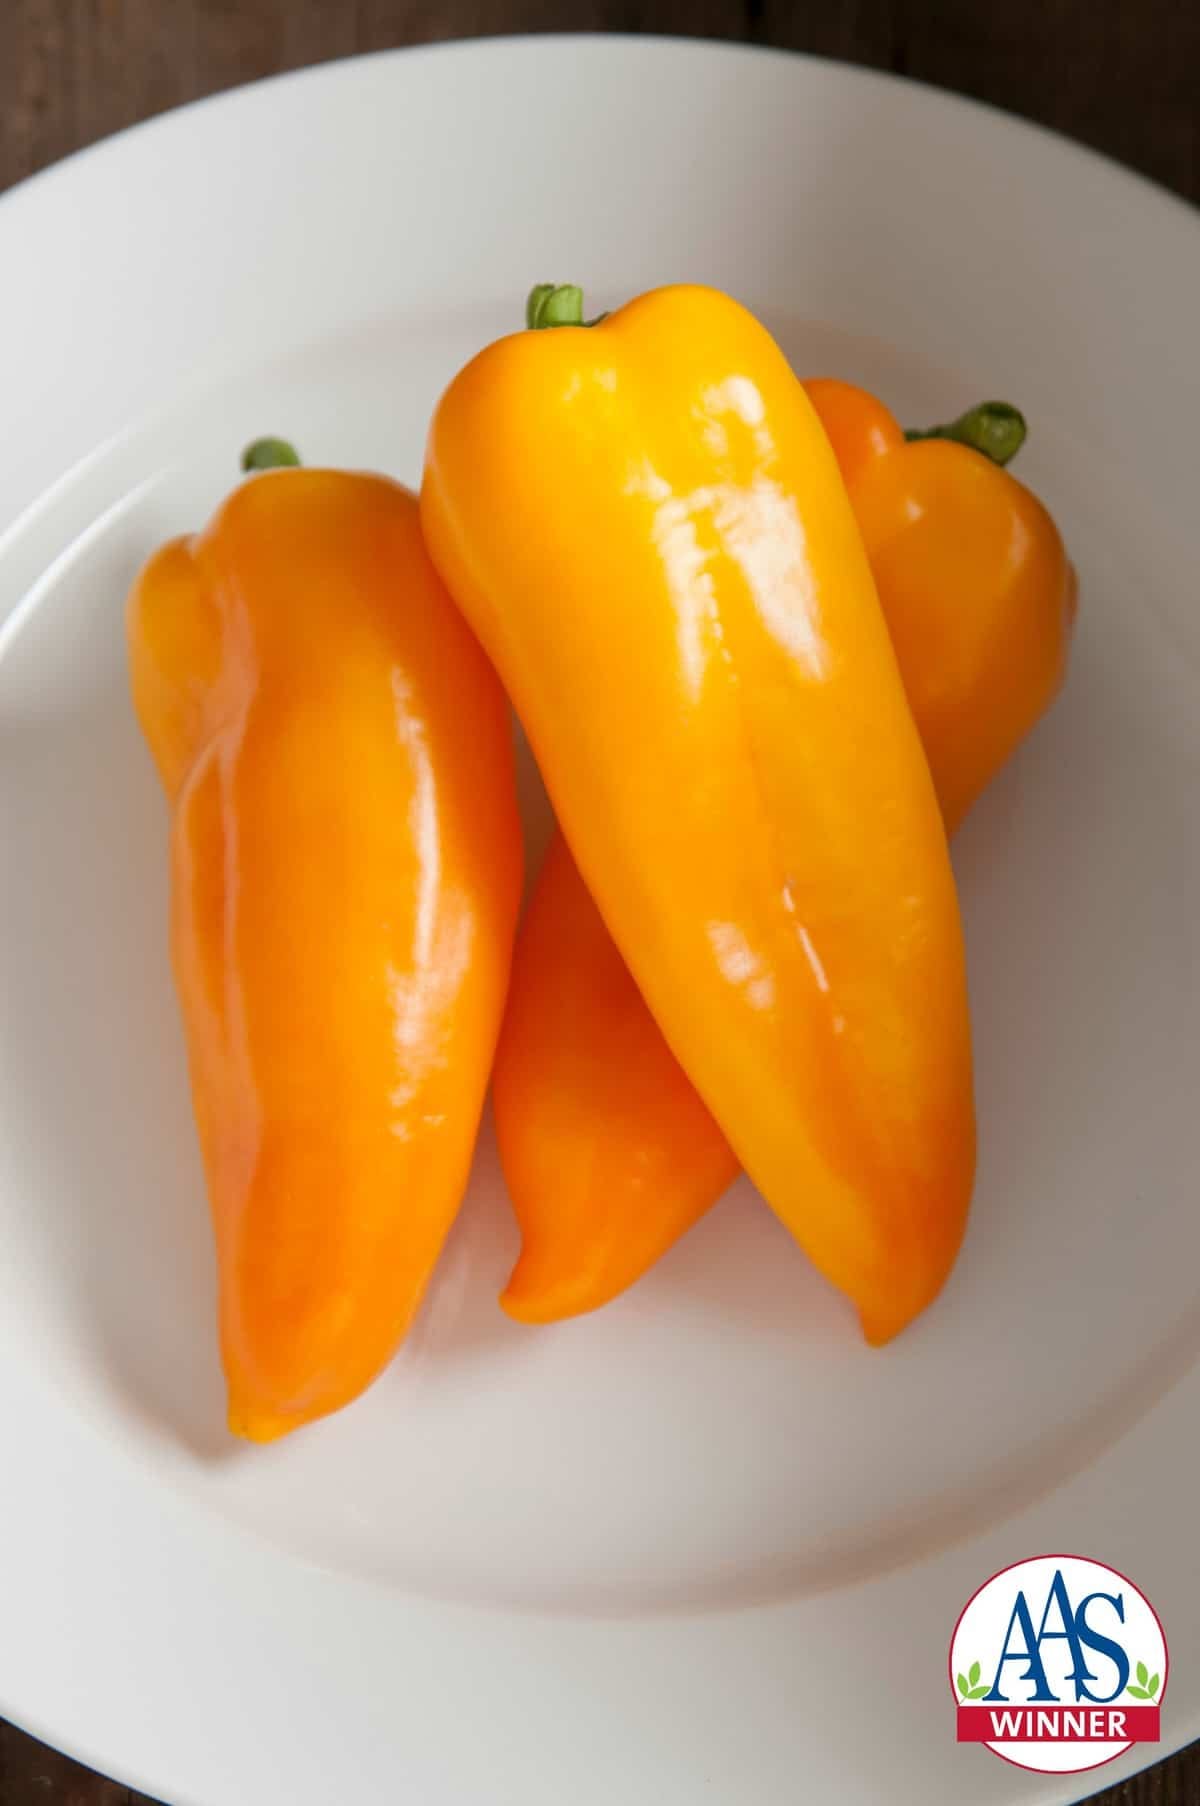 Cornito Giallo pepper